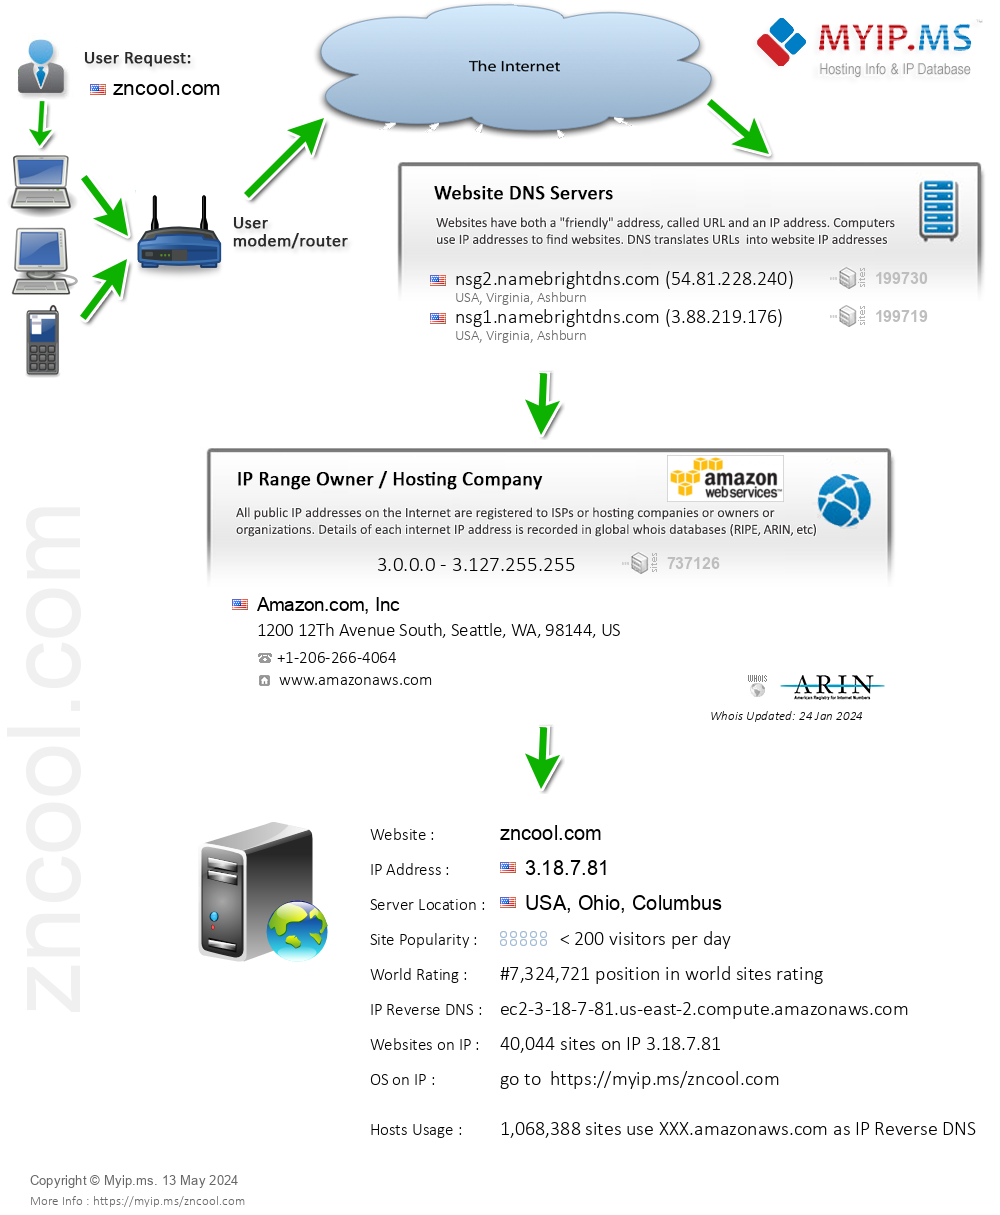 Zncool.com - Website Hosting Visual IP Diagram